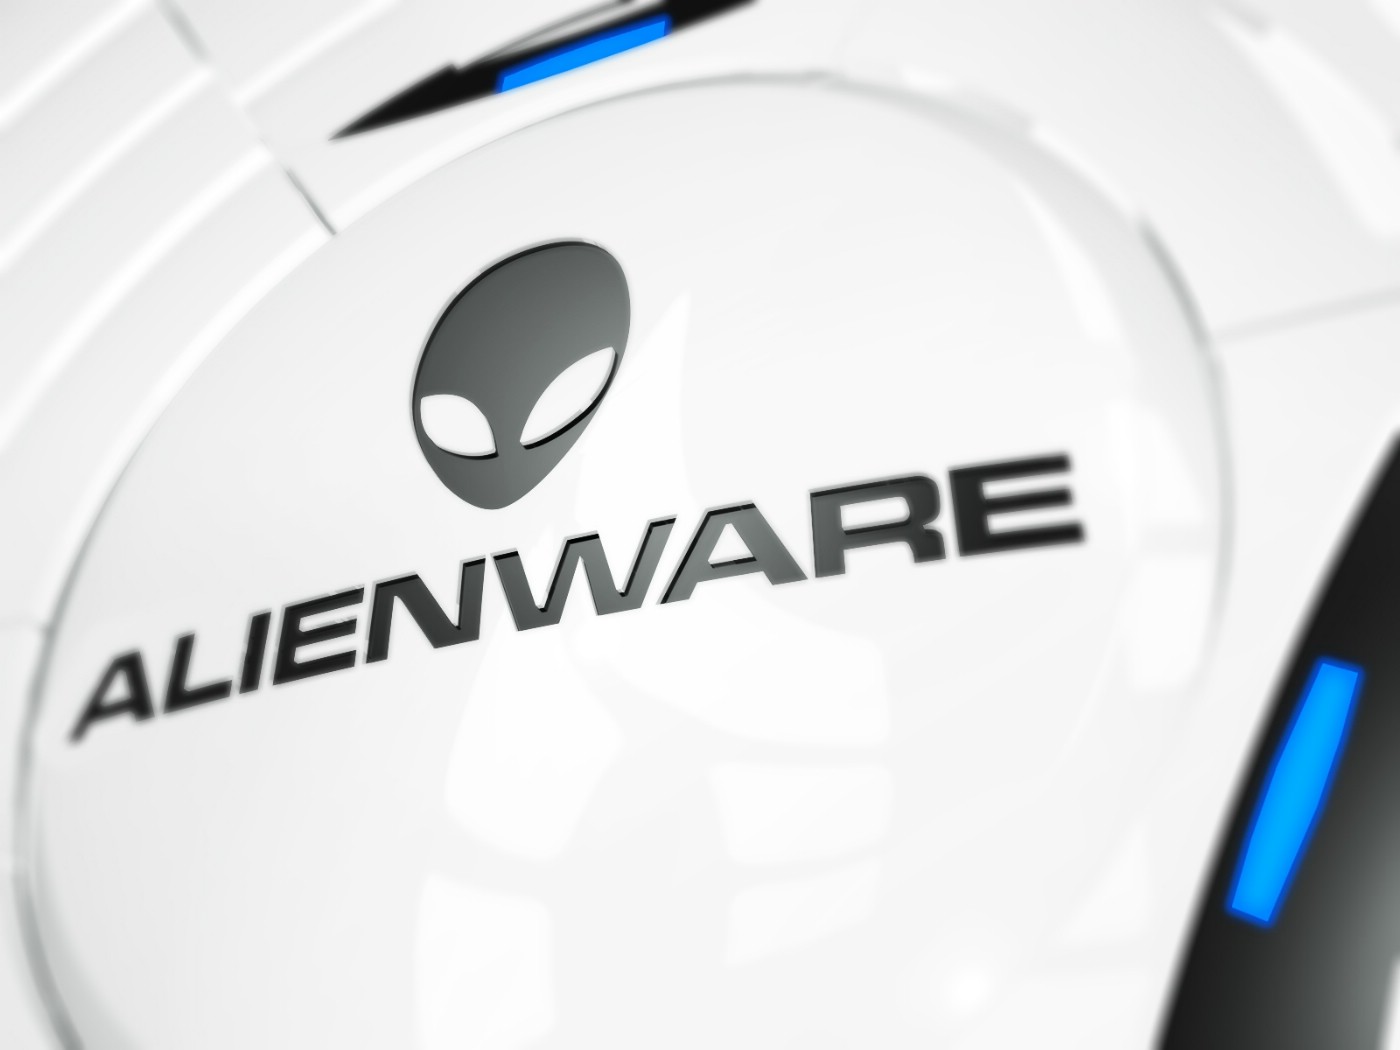 壁纸1400x1050Alienware 戴尔 壁纸5壁纸 Alienware（戴尔）壁纸 Alienware（戴尔）图片 Alienware（戴尔）素材 系统壁纸 系统图库 系统图片素材桌面壁纸